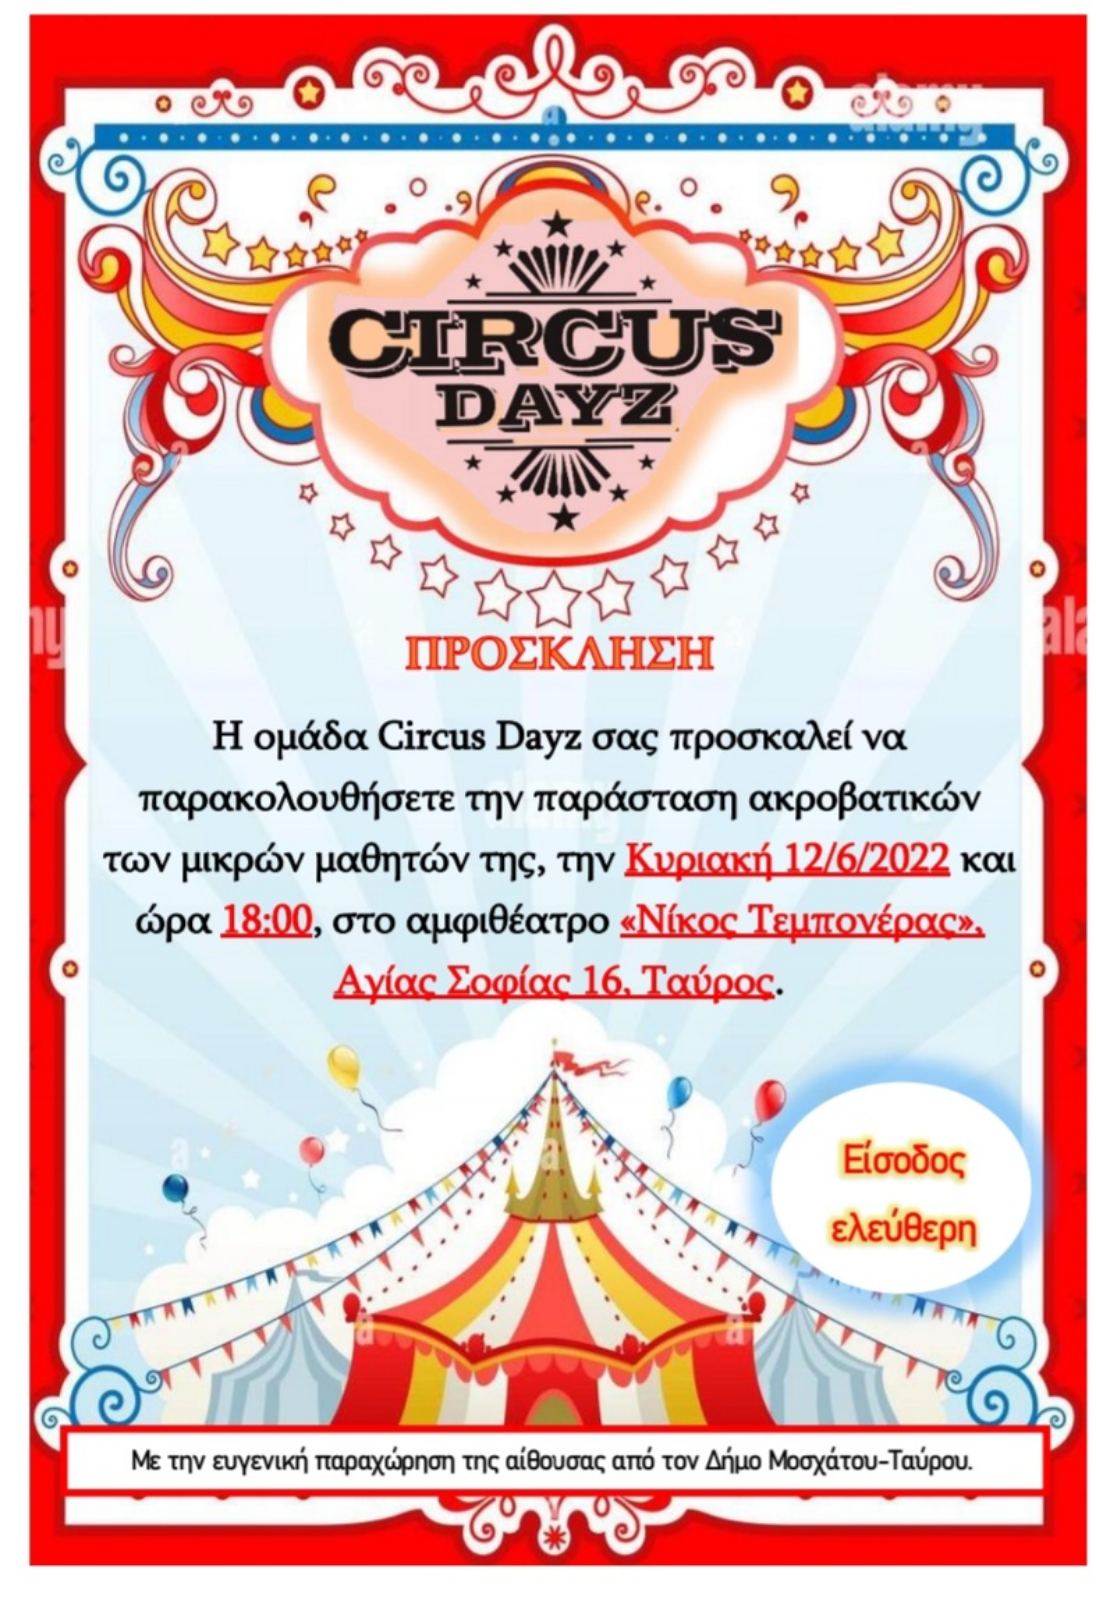 Παράσταση ακροβατικών από την ομάδα Circus Dayz στο αμφιθέατρο «Νίκος Τεμπονέρας» στον Ταύρο